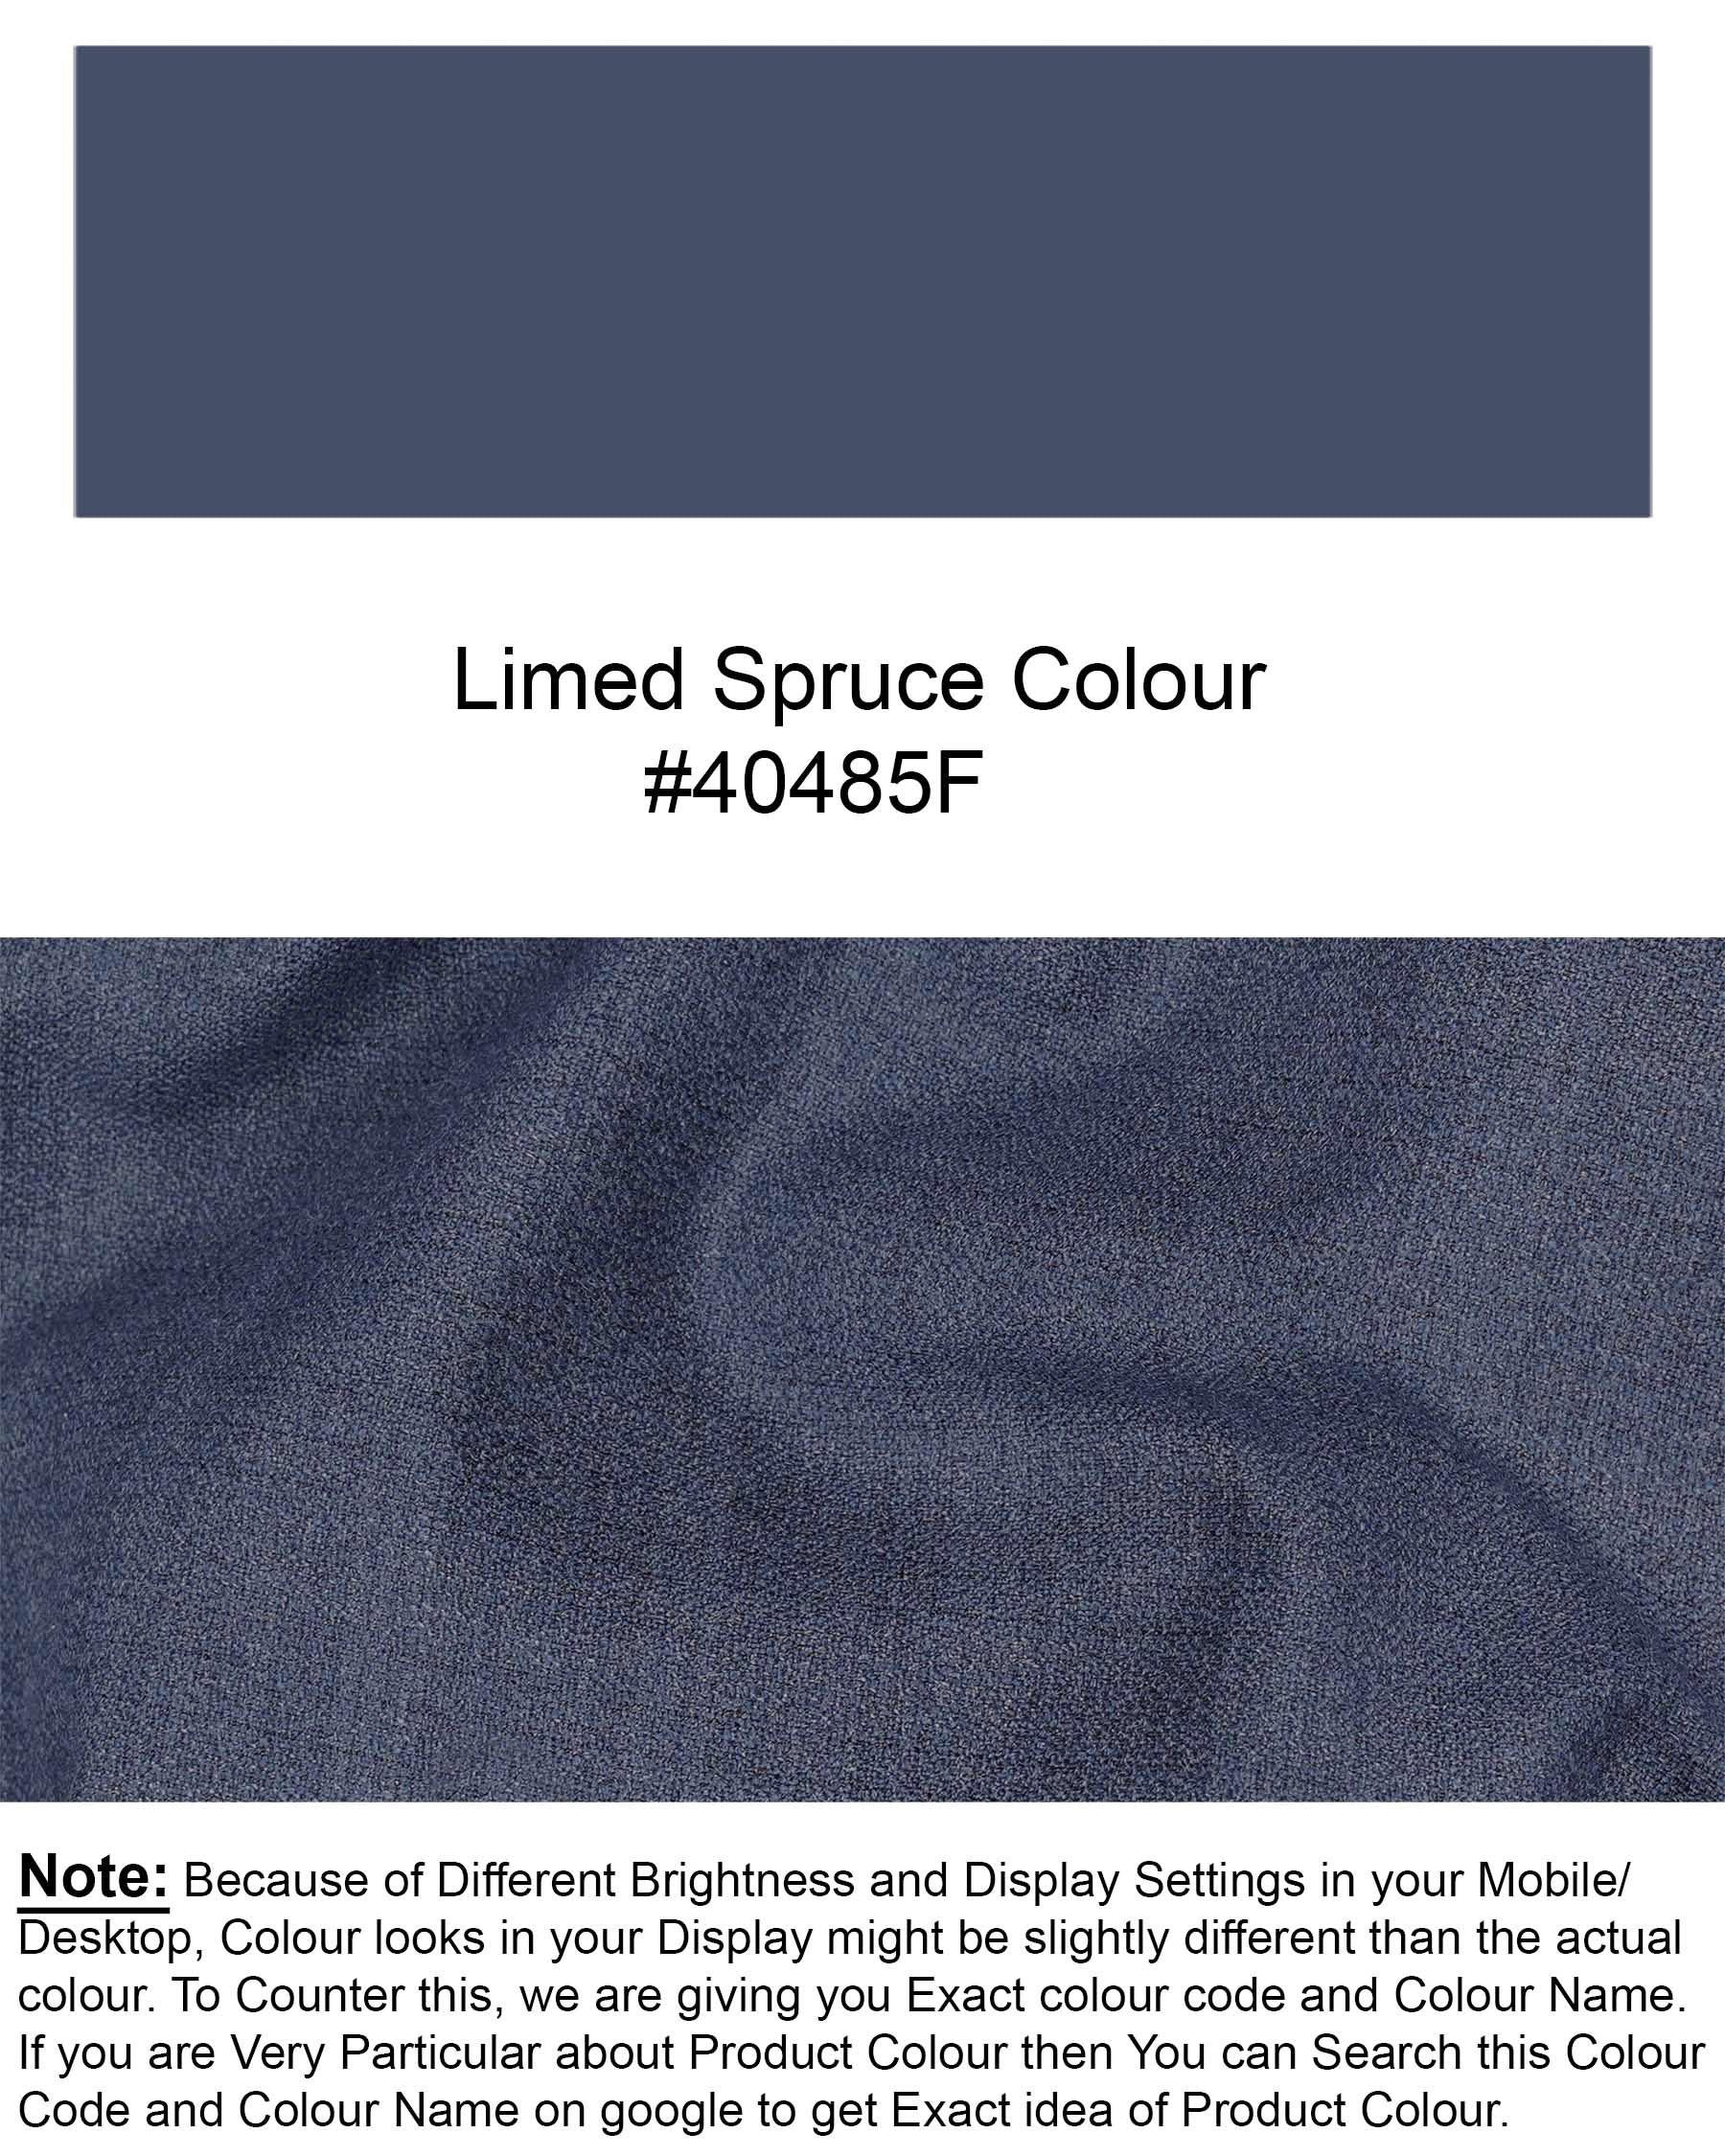 Limed Spruce Blue Plaid Pant T1930-28, T1930-30, T1930-32, T1930-34, T1930-36, T1930-38, T1930-40, T1930-42, T1930-44 